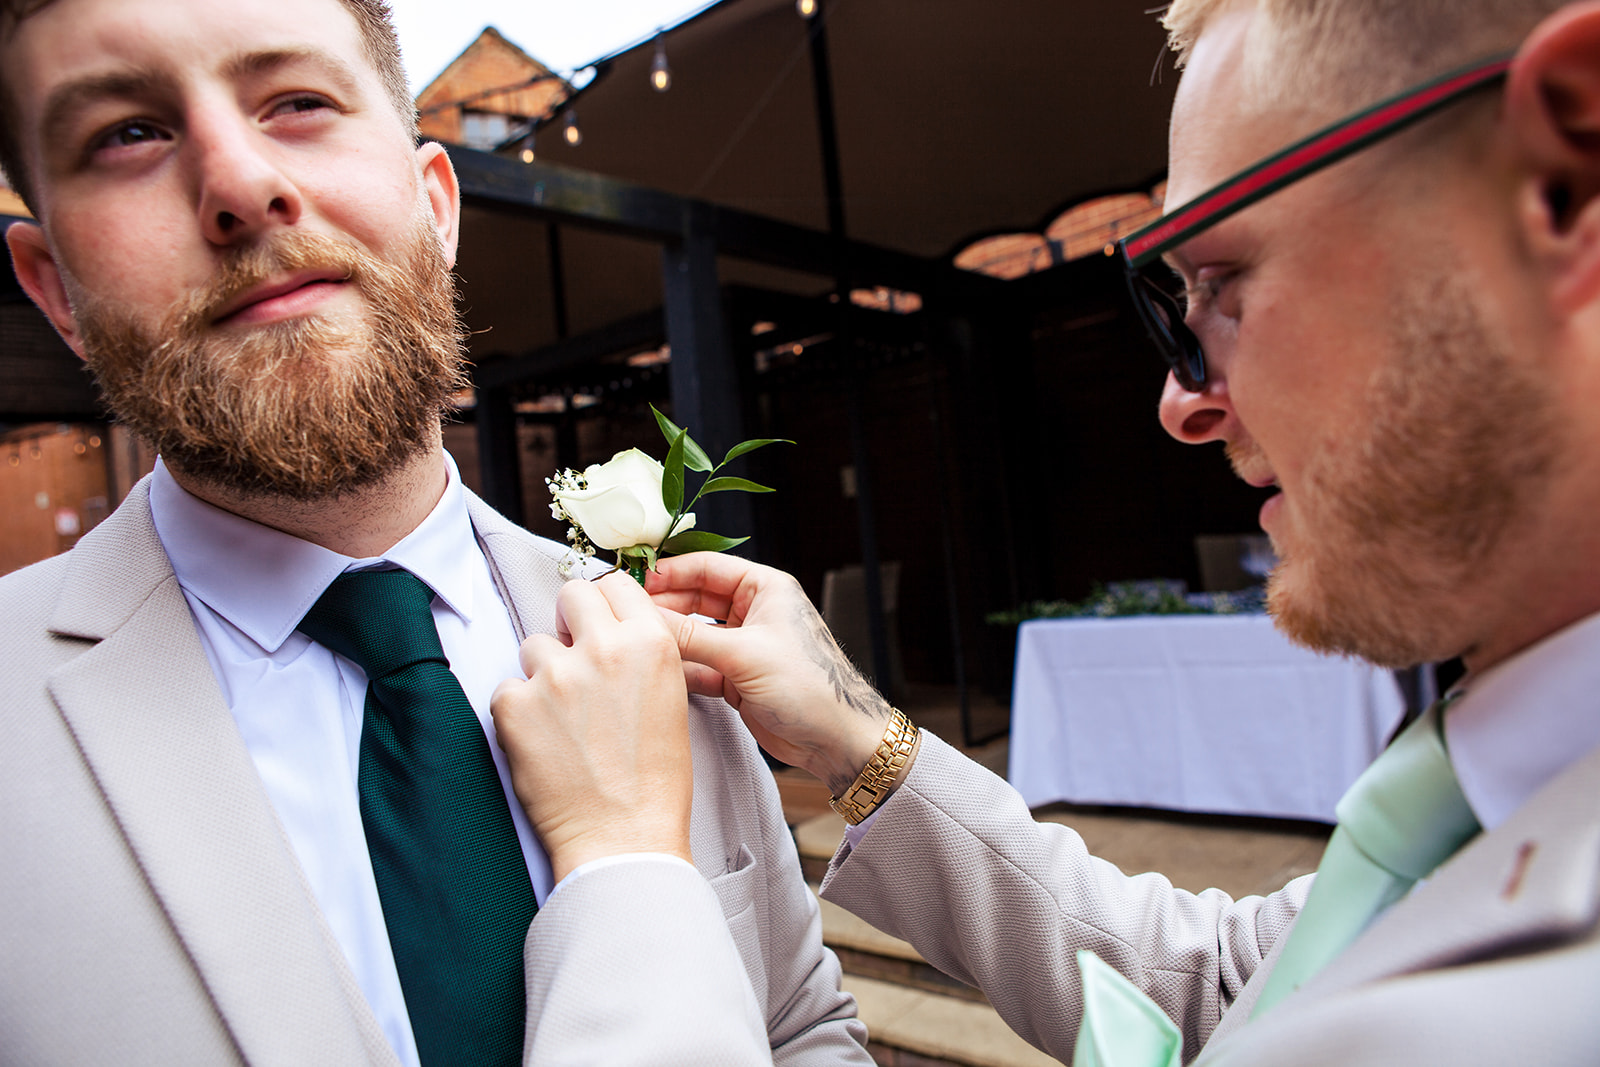 Flower being pinned on groom's suit